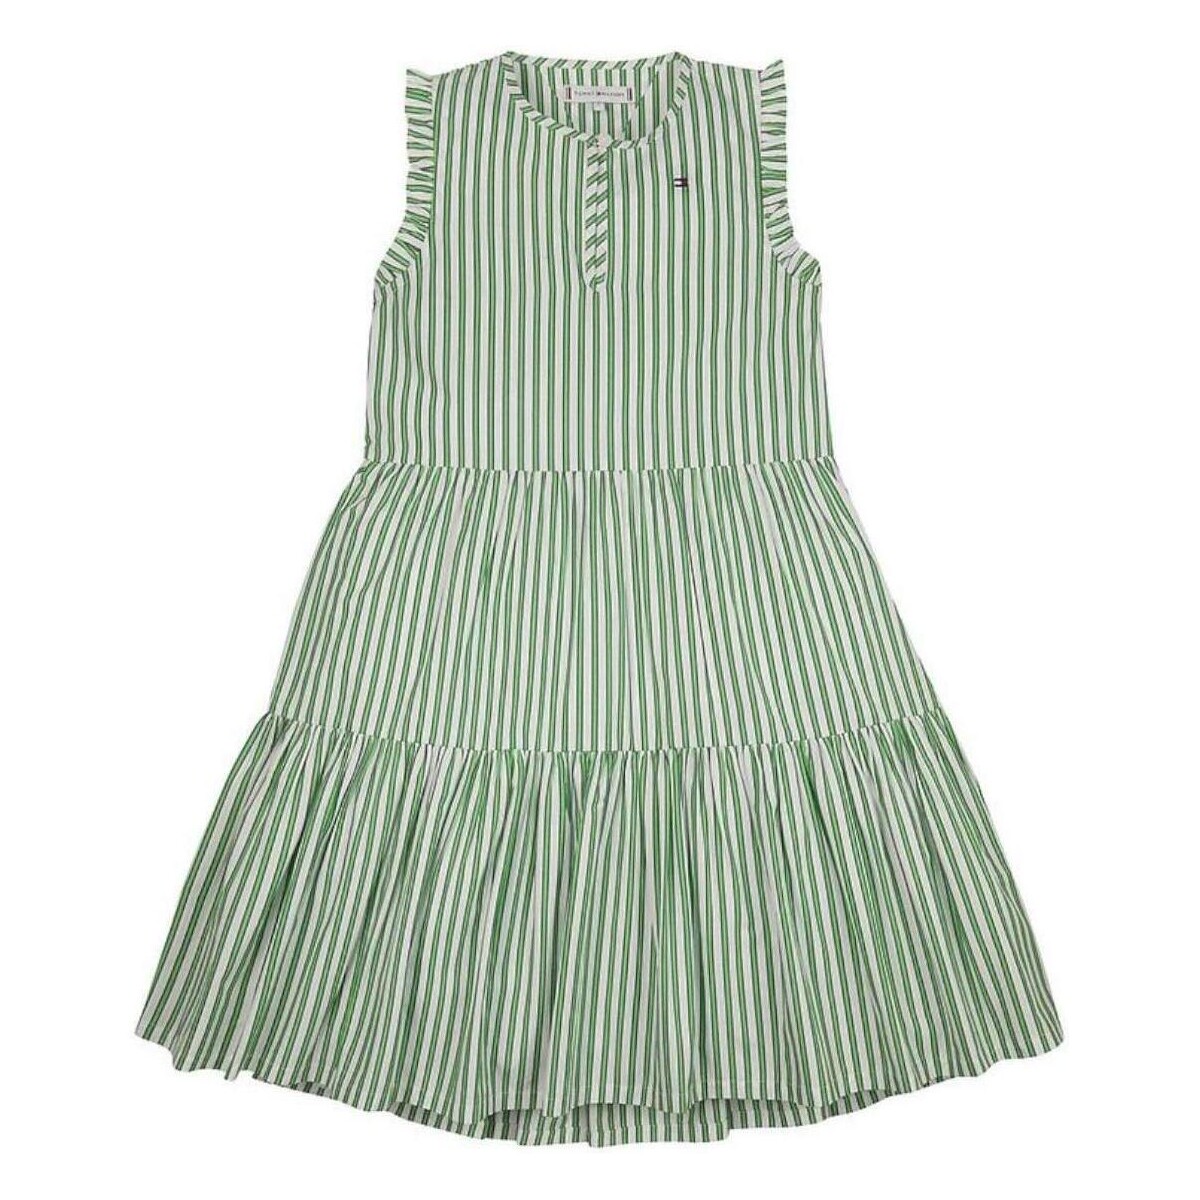 Oblečenie Dievča Šaty Tommy Hilfiger  Zelená